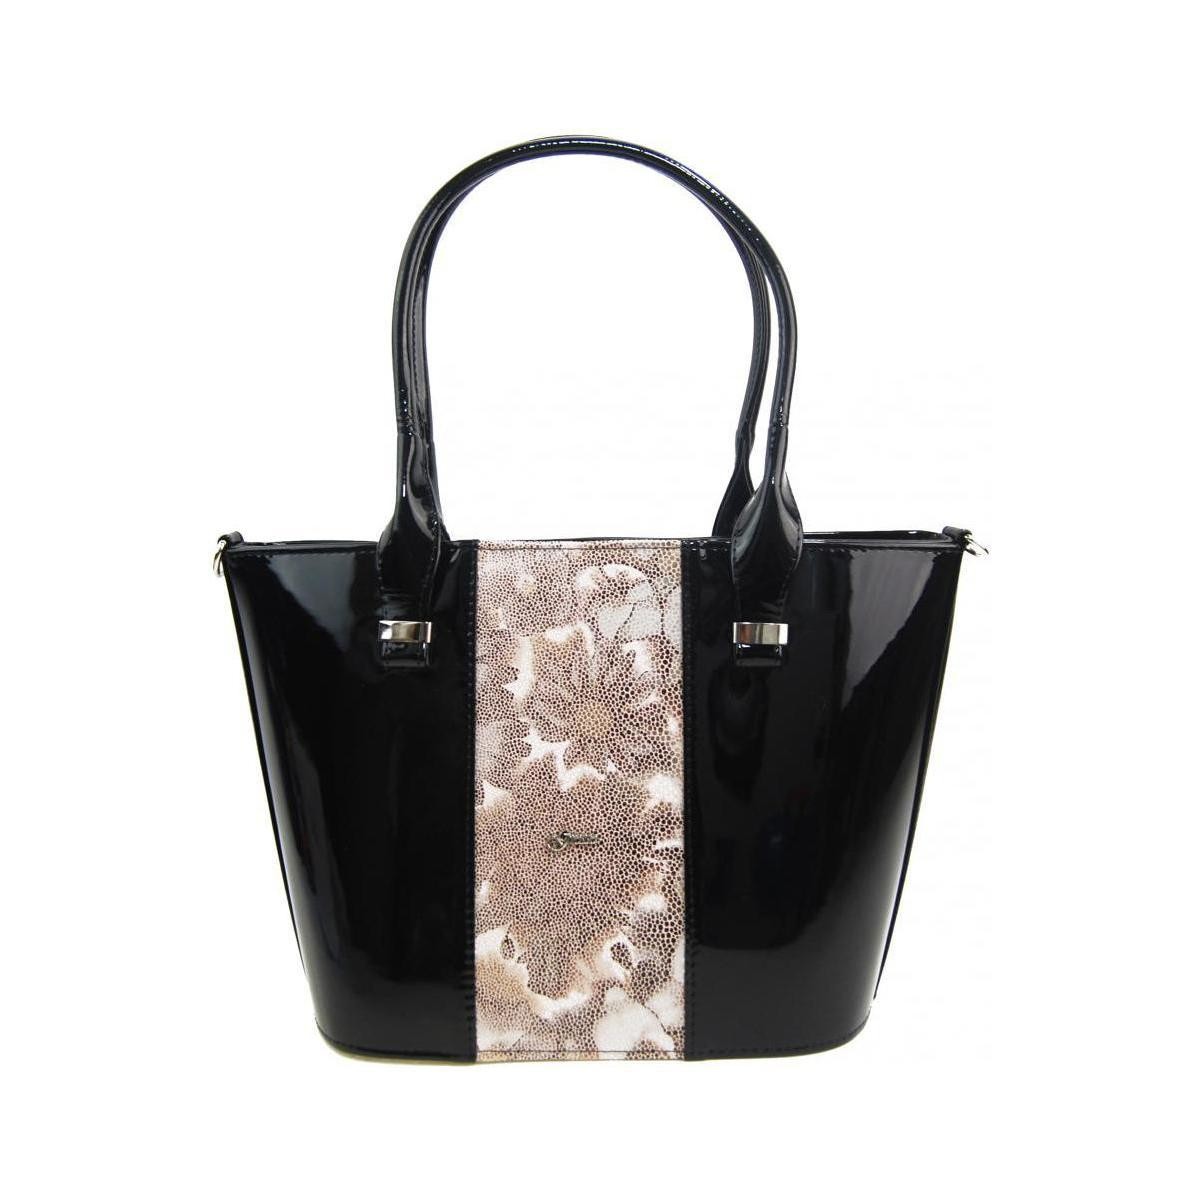 Taška Ženy Kabelky  Grosso Luxusní dámská kabelka černý lak s hnědými kvítky S504 Černá